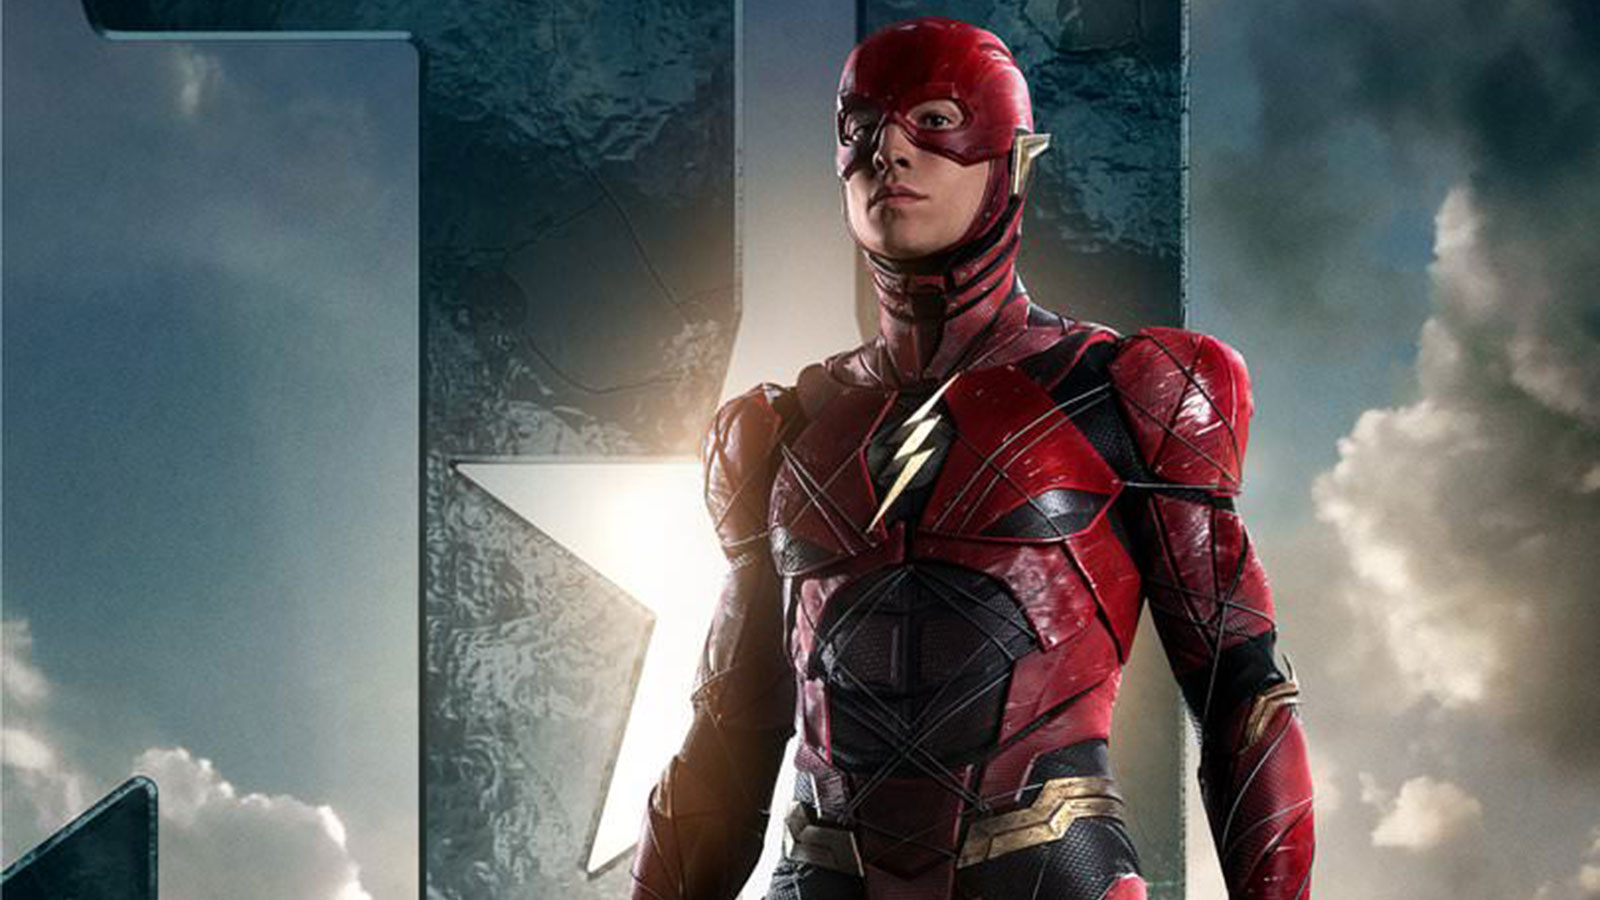 Habrá peli de Flash y sí será de ‘Flashpoint’ pero diferente a los cómics